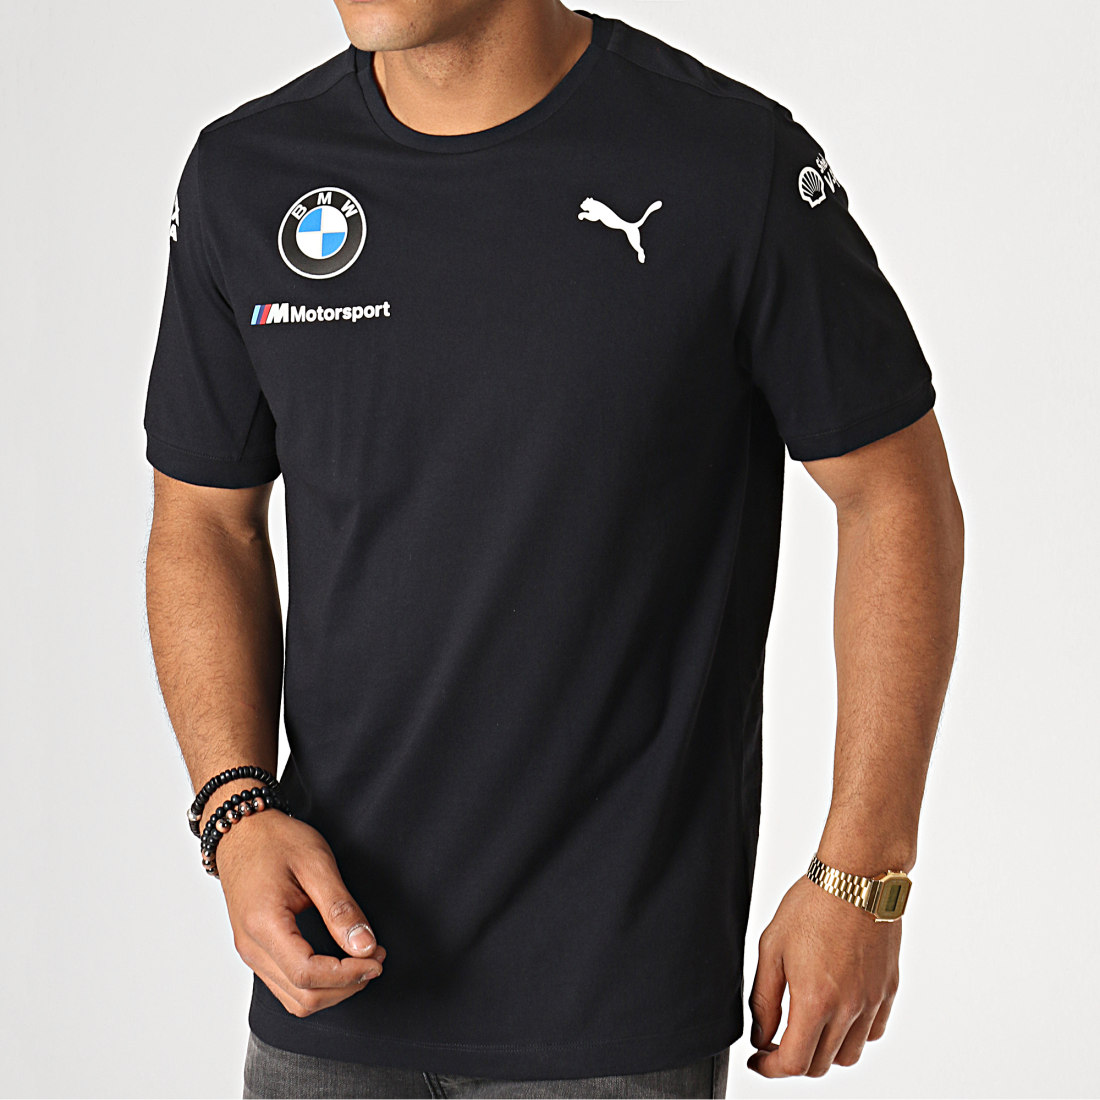 Puma Bmw T Shirt : PUMA X Bmw Black Motorsport T7 T-shirt for Men - Lyst - Puma brand bold 